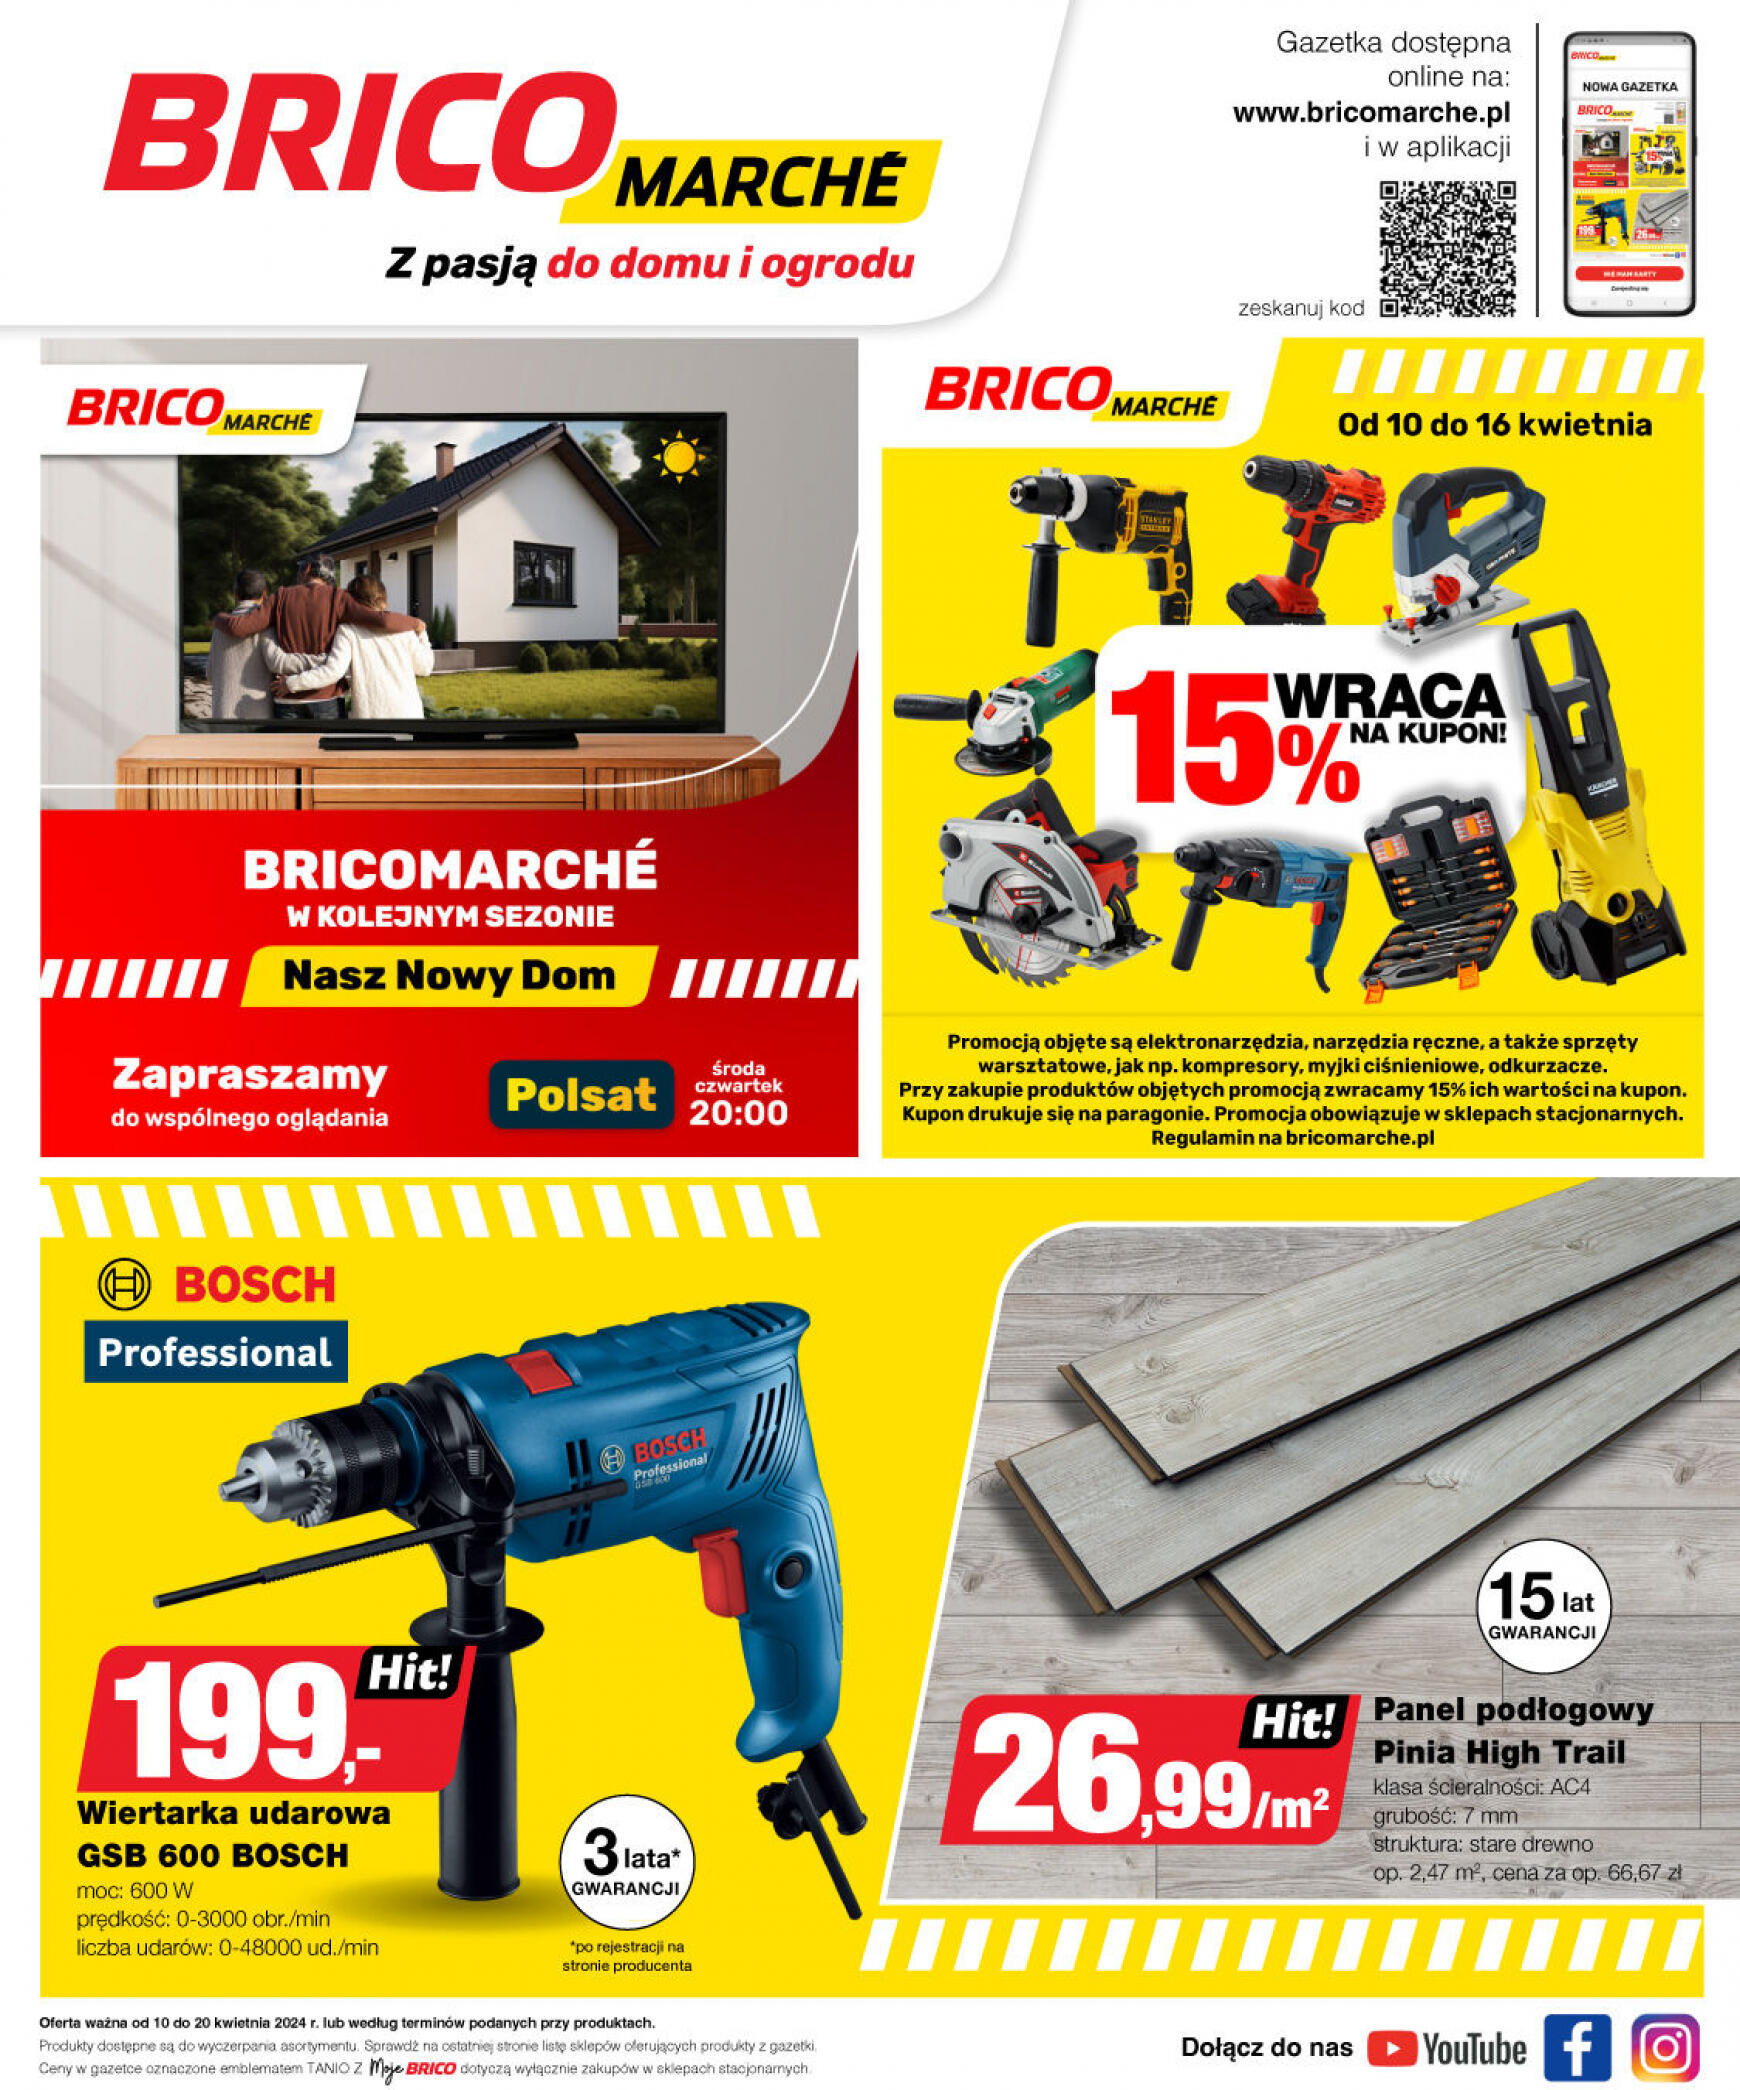 brico-marche - Bricomarché gazetka aktualna ważna od 10.04. - 20.04. - page: 14